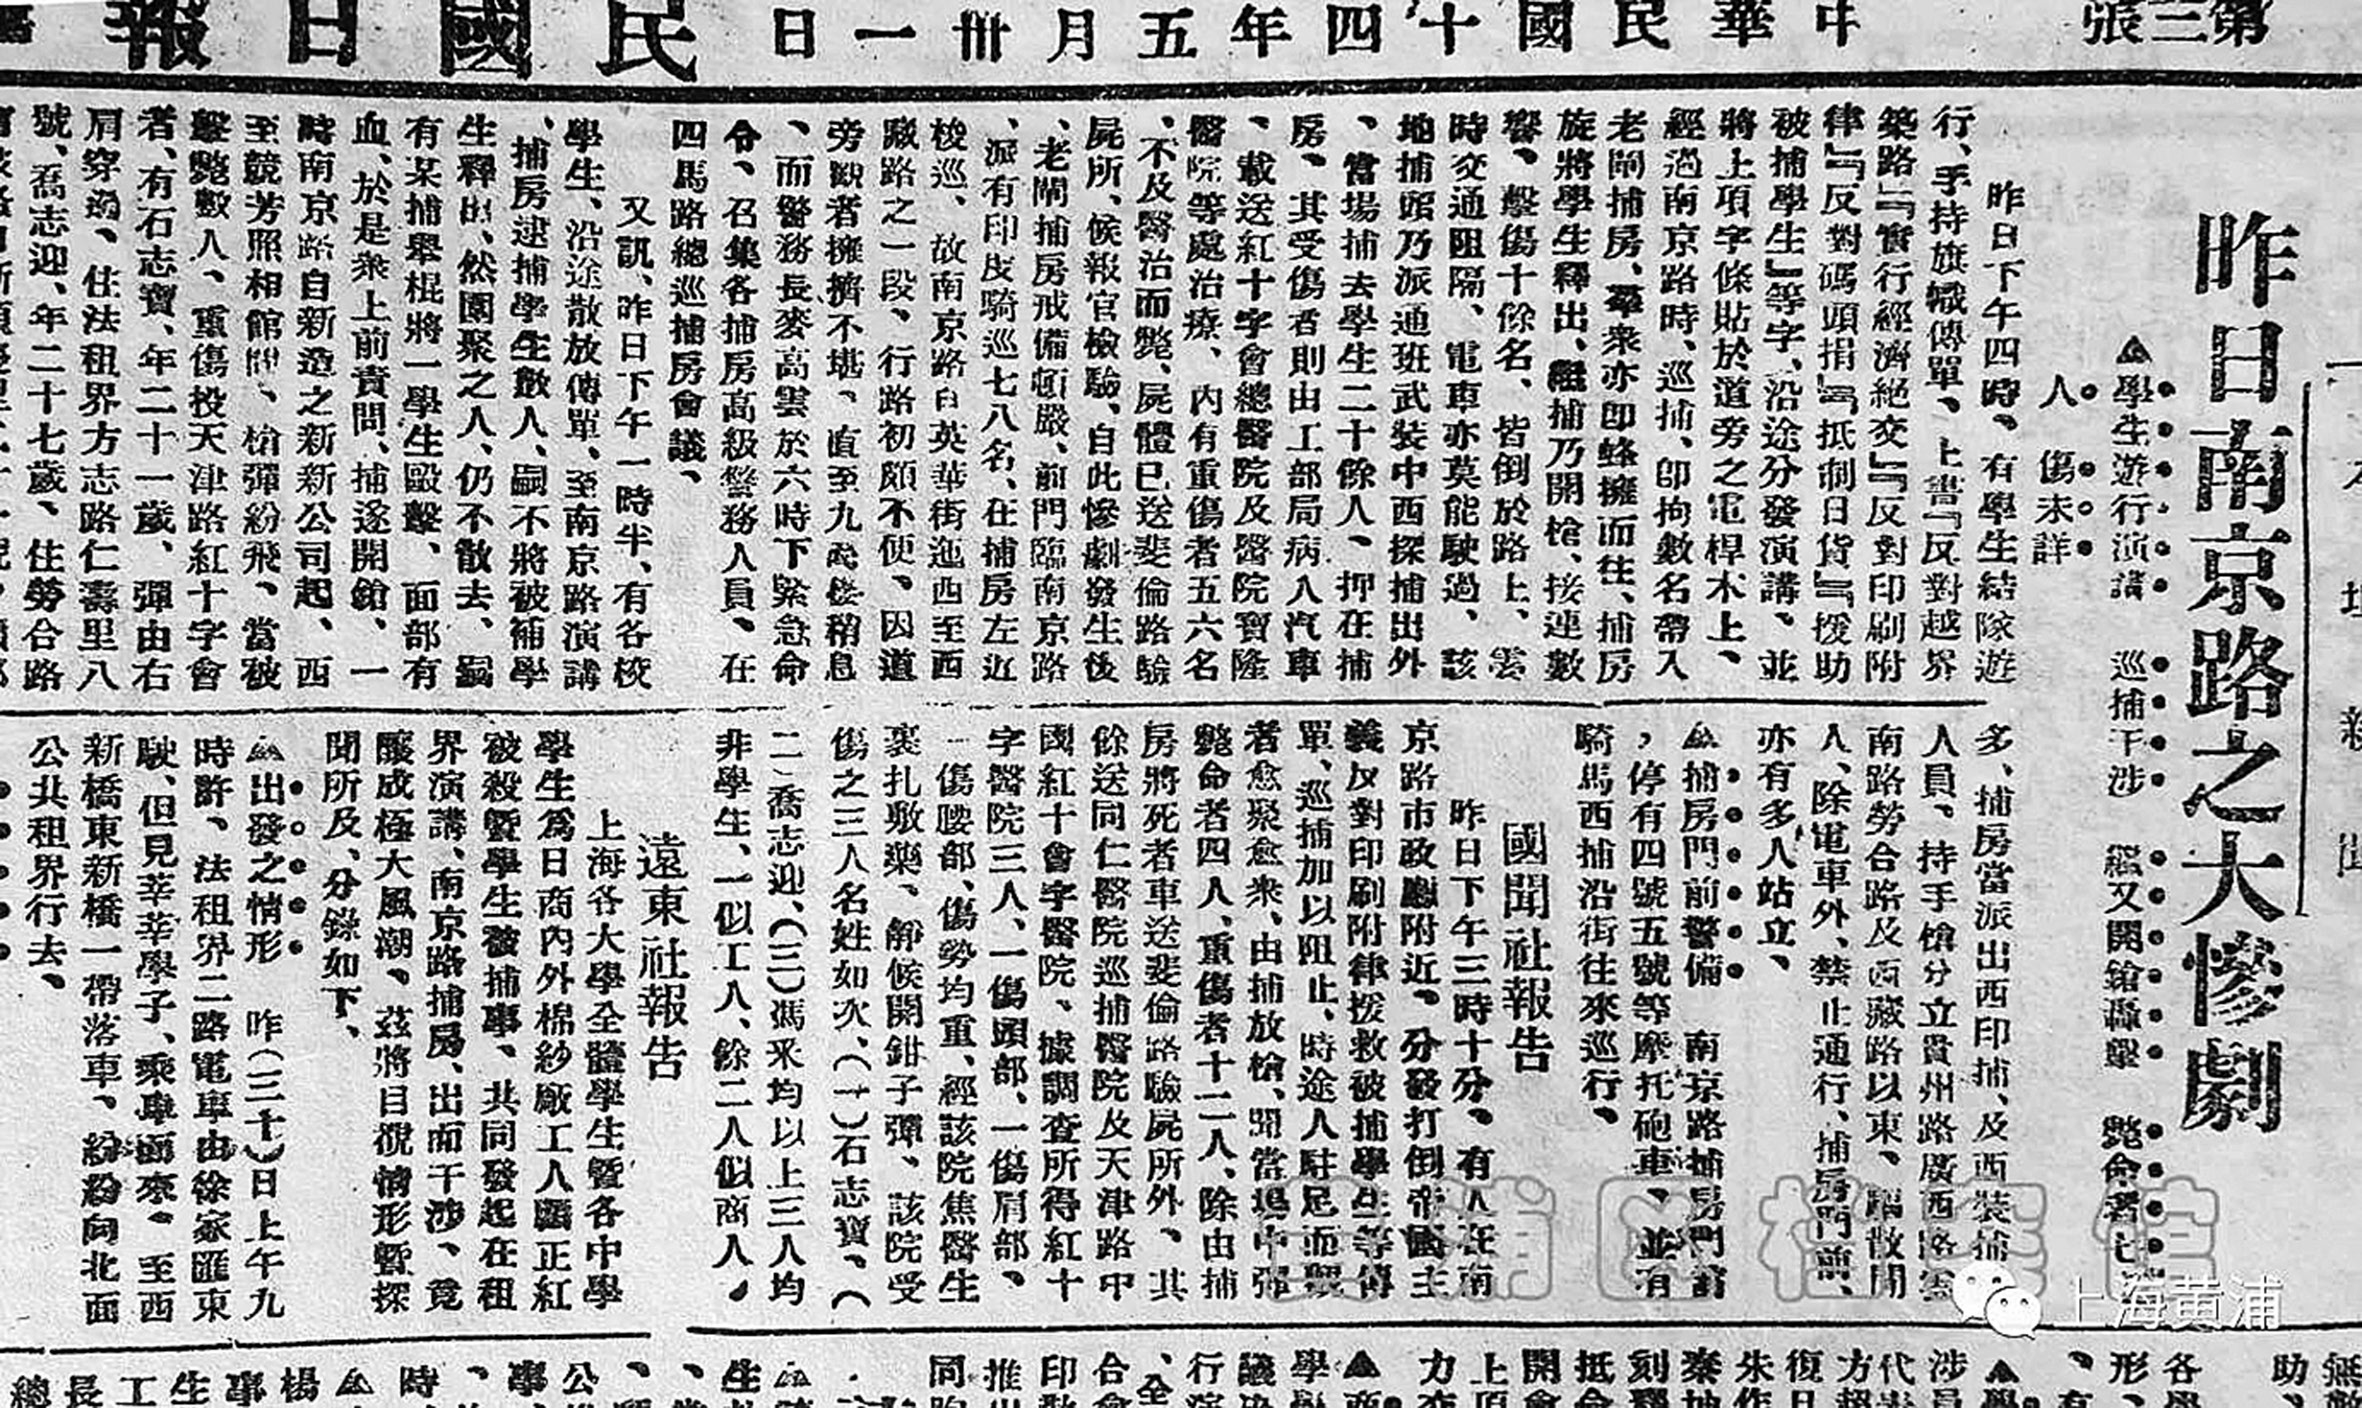 《民国日报》刊登五卅惨案消息 图片来自上海市地方志办公室官网